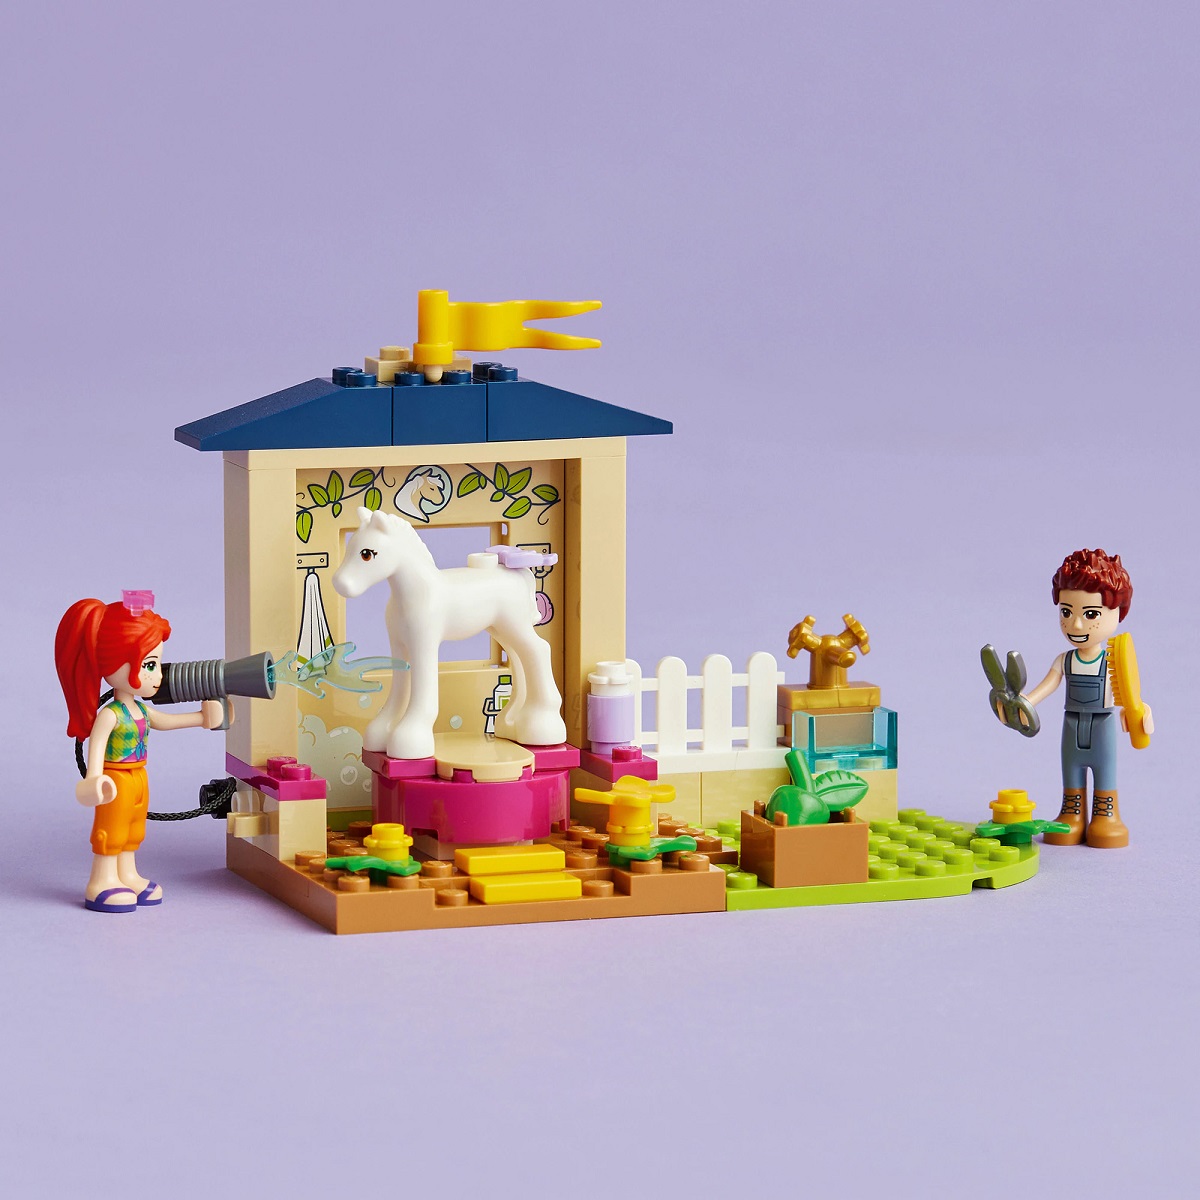 Lego Friends. Grajd pentru ingrijirea poneiului